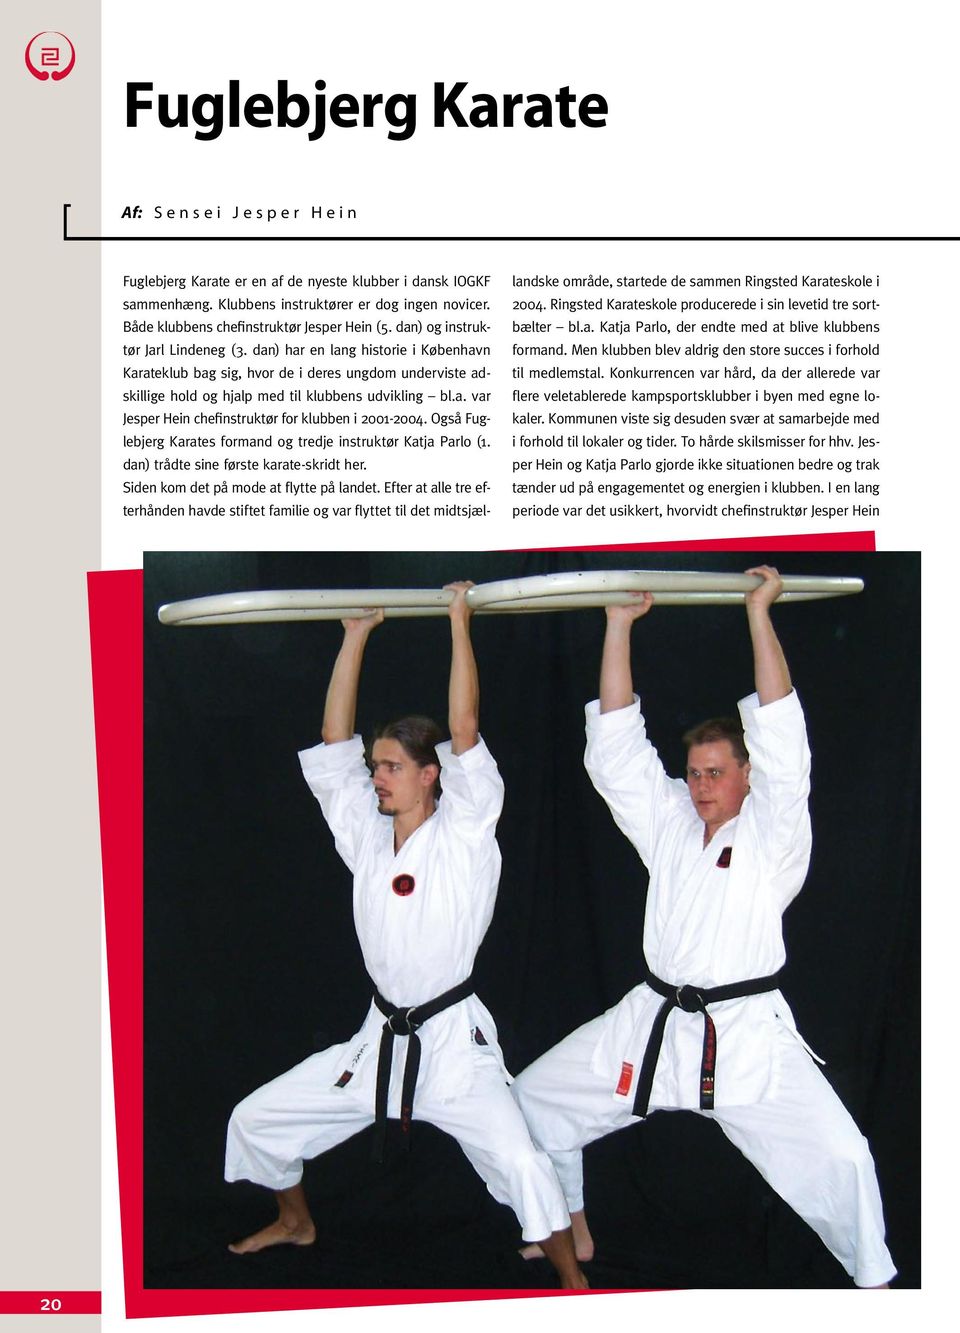 dan) har en lang historie i København Karateklub bag sig, hvor de i deres ungdom underviste adskillige hold og hjalp med til klubbens udvikling bl.a. var Jesper Hein chefinstruktør for klubben i 2001-2004.